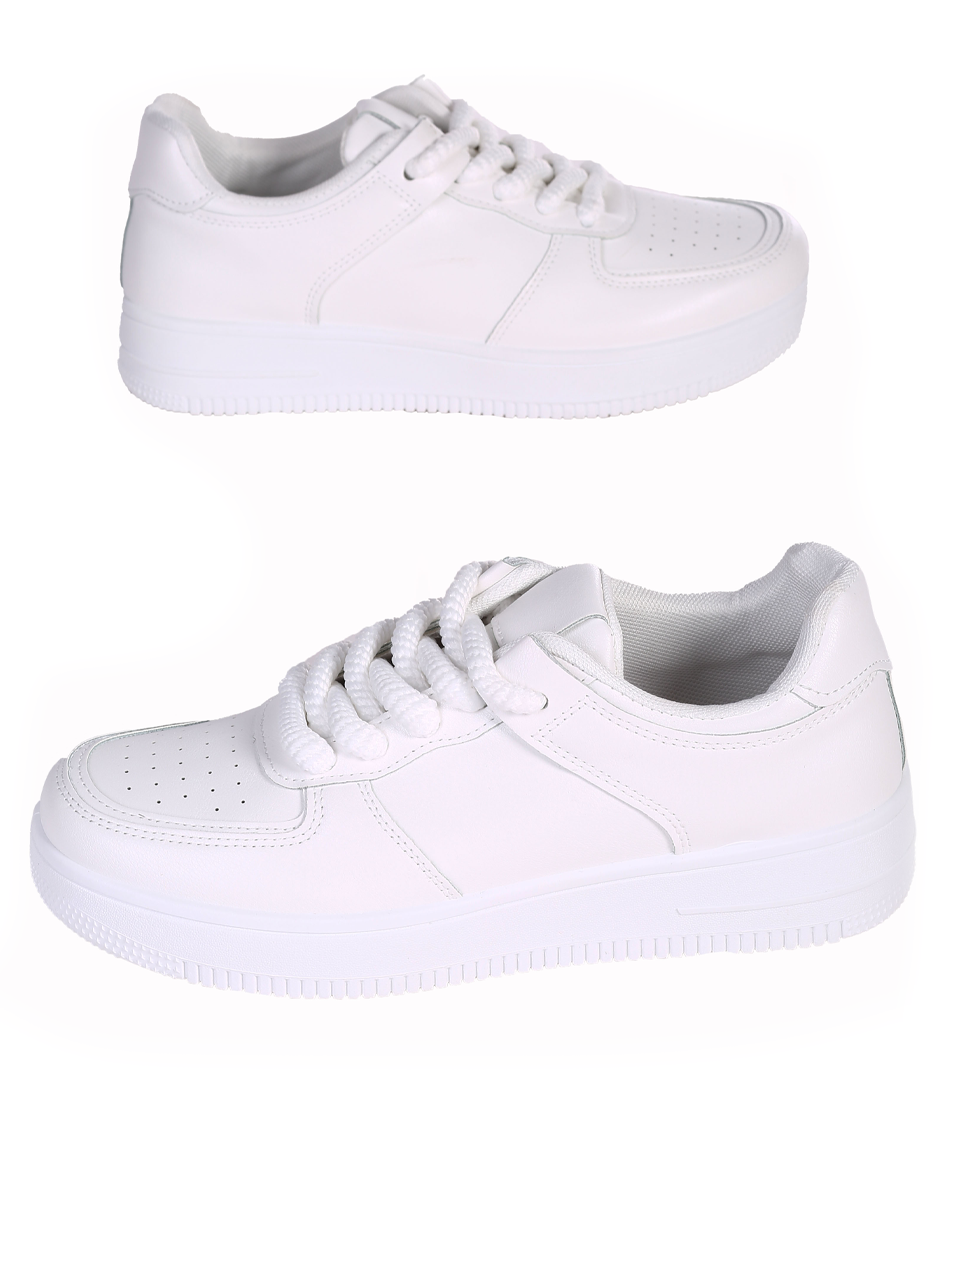 Eжедневни мъжки обувки в бяло 7U-24116 white